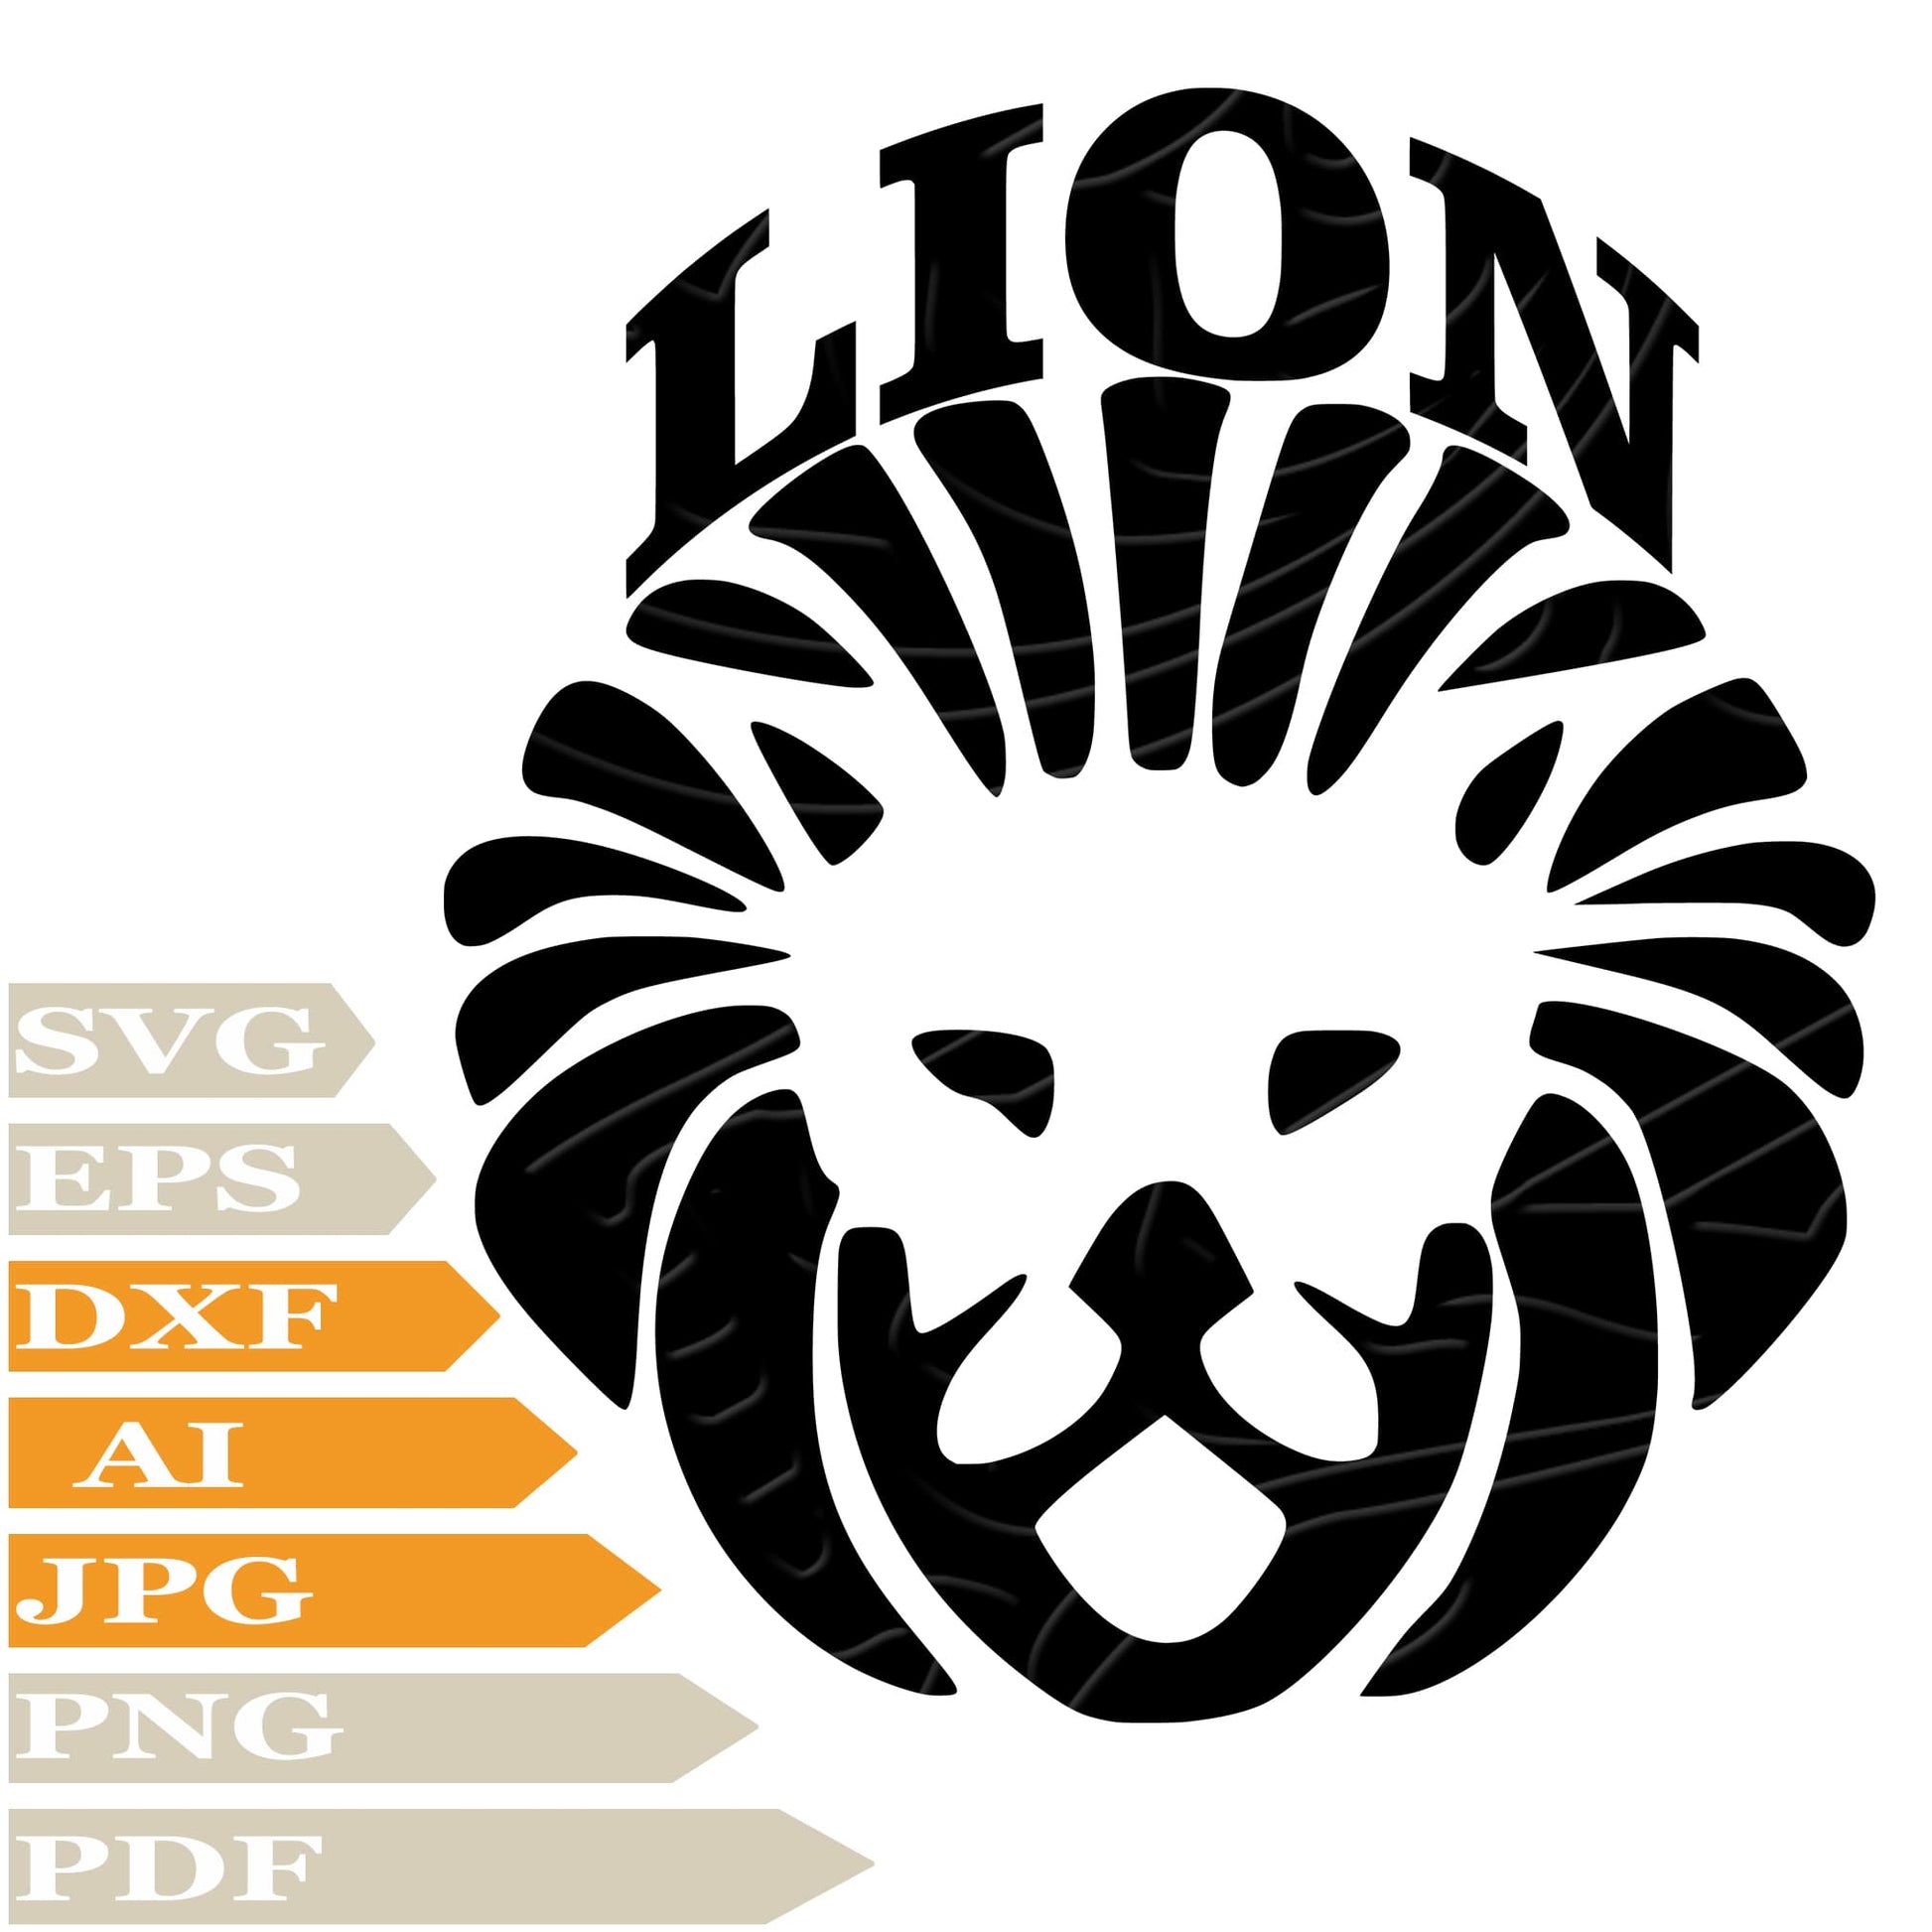 Lion SVG, Wild Lion Head SVG Design, King Lion Vector Graphics, Lion For Cricut, Digital Instant Download, Clip Art, Cut File, T-Shirts, Silhouette